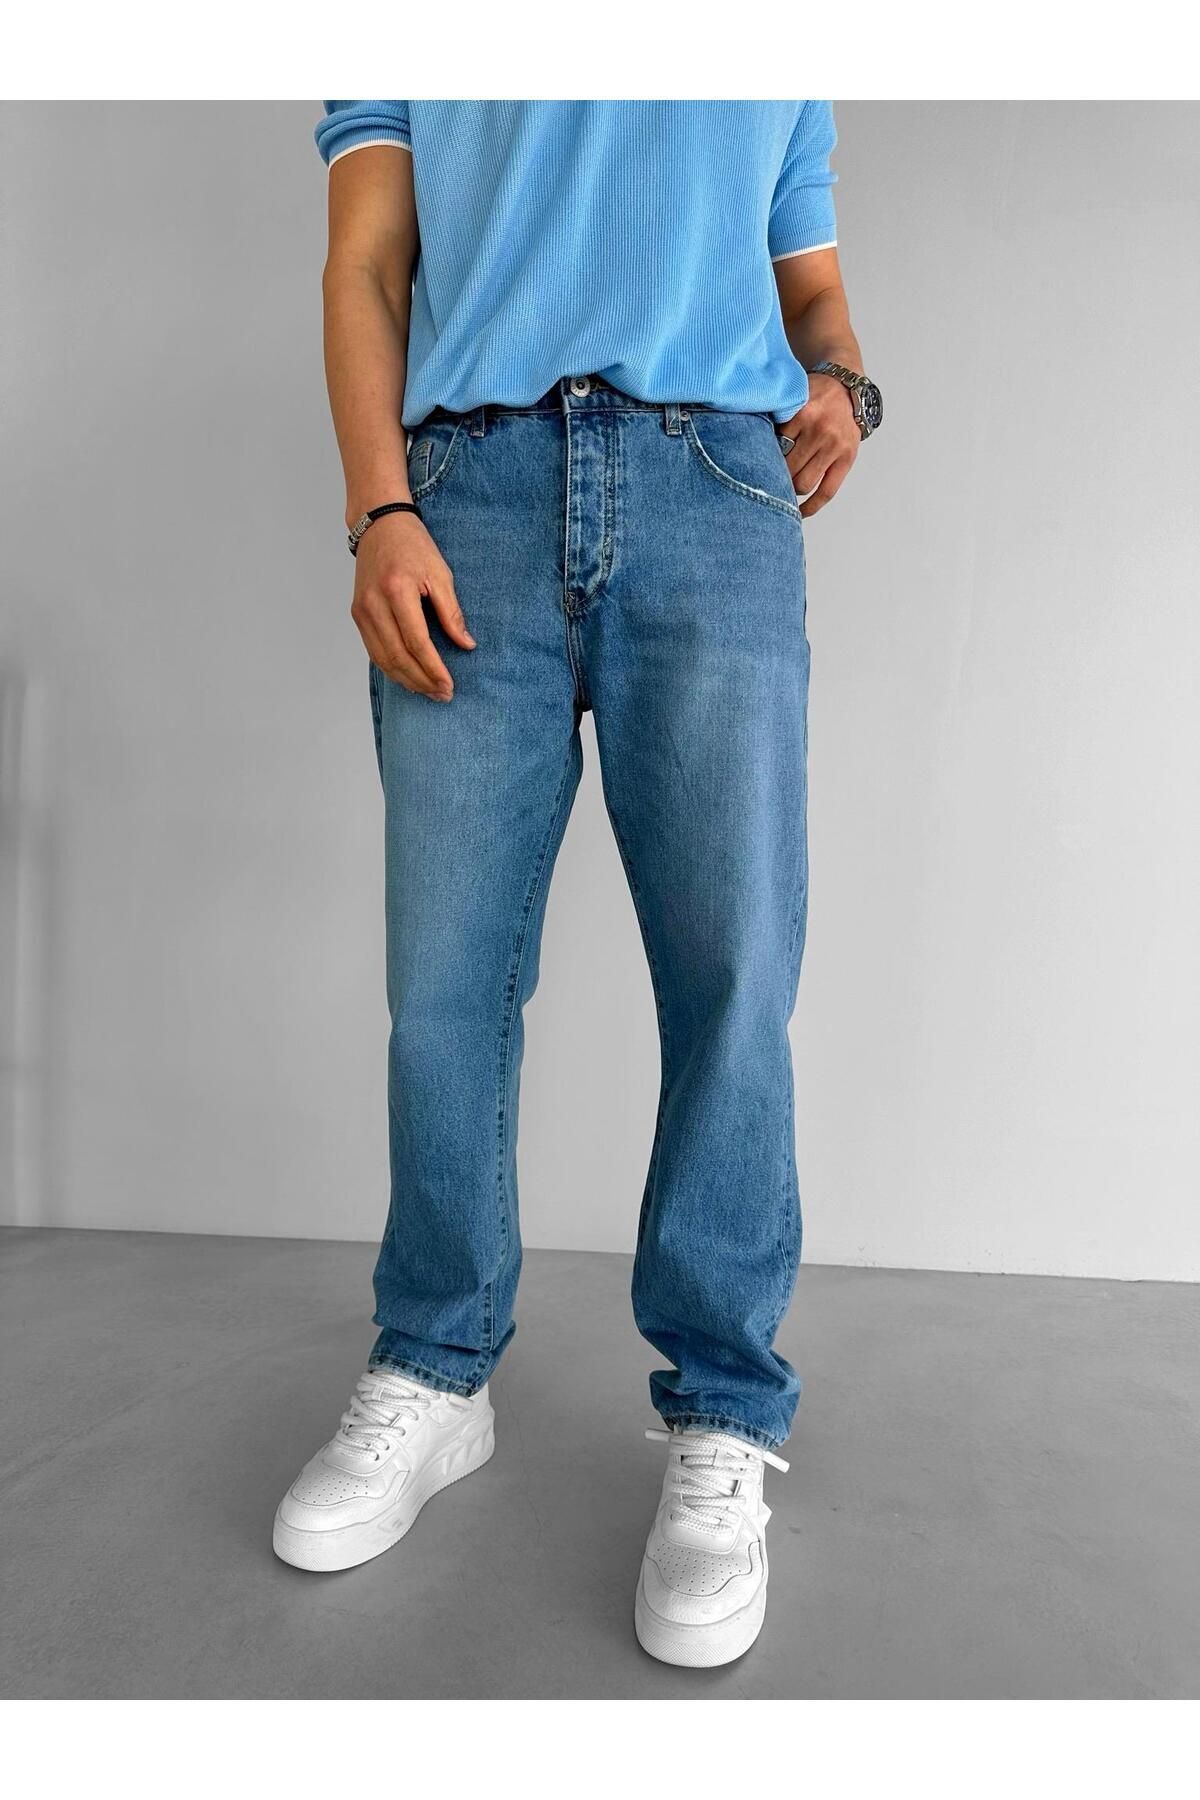 ablikaonline Джинсовые брюки прямого кроя Baggy Fit, синие JEN.0074